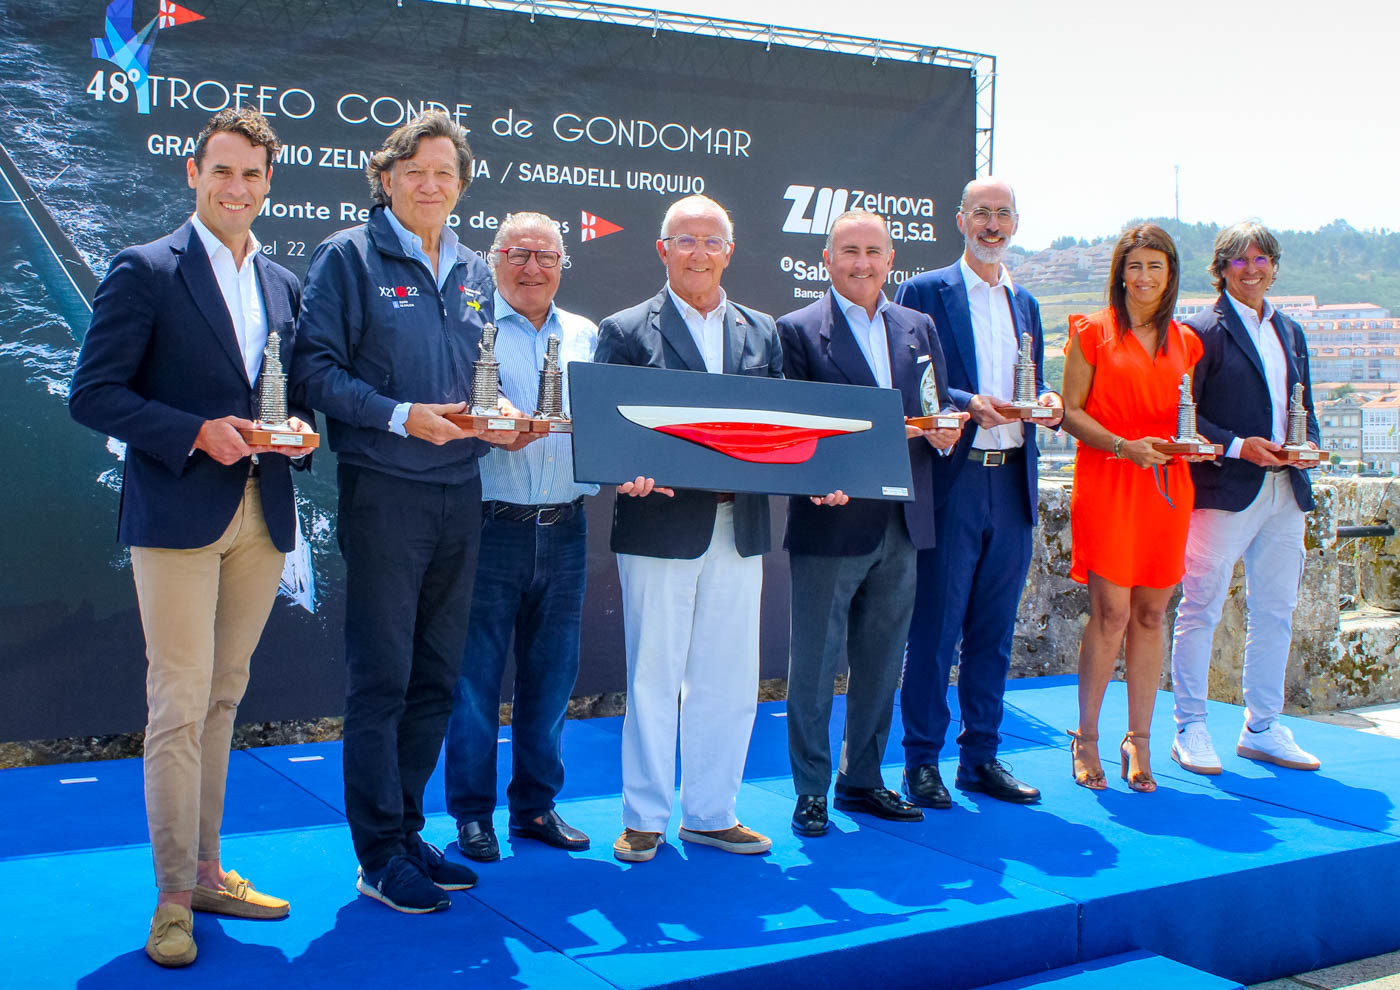 El Trofeo Conde de Gondomar – Gran Premio Zelnova Zeltia / Sabadell Urquijo presenta su edición más solidaria